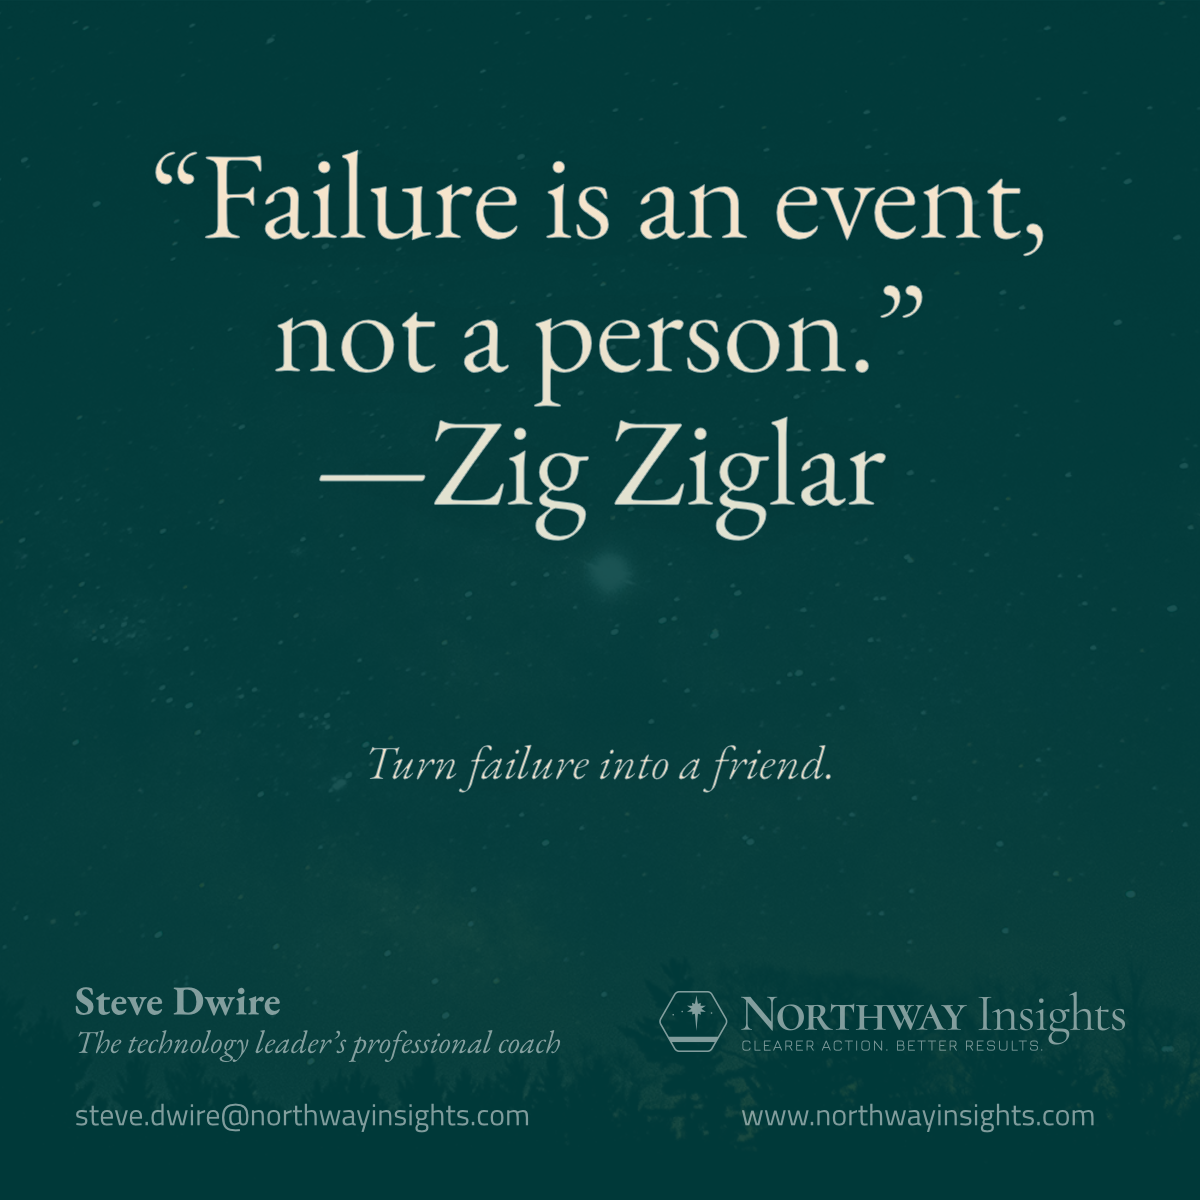 “Failure is an event, not a person.” —Zig Ziglar